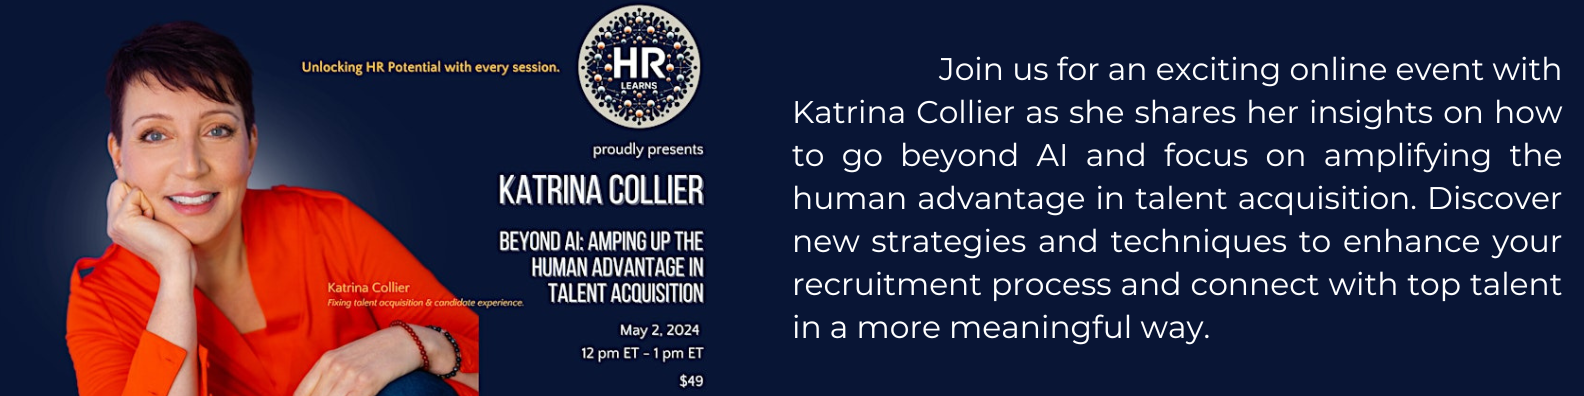 Katrina Collier - webinar for HRLearns on hiring and AI